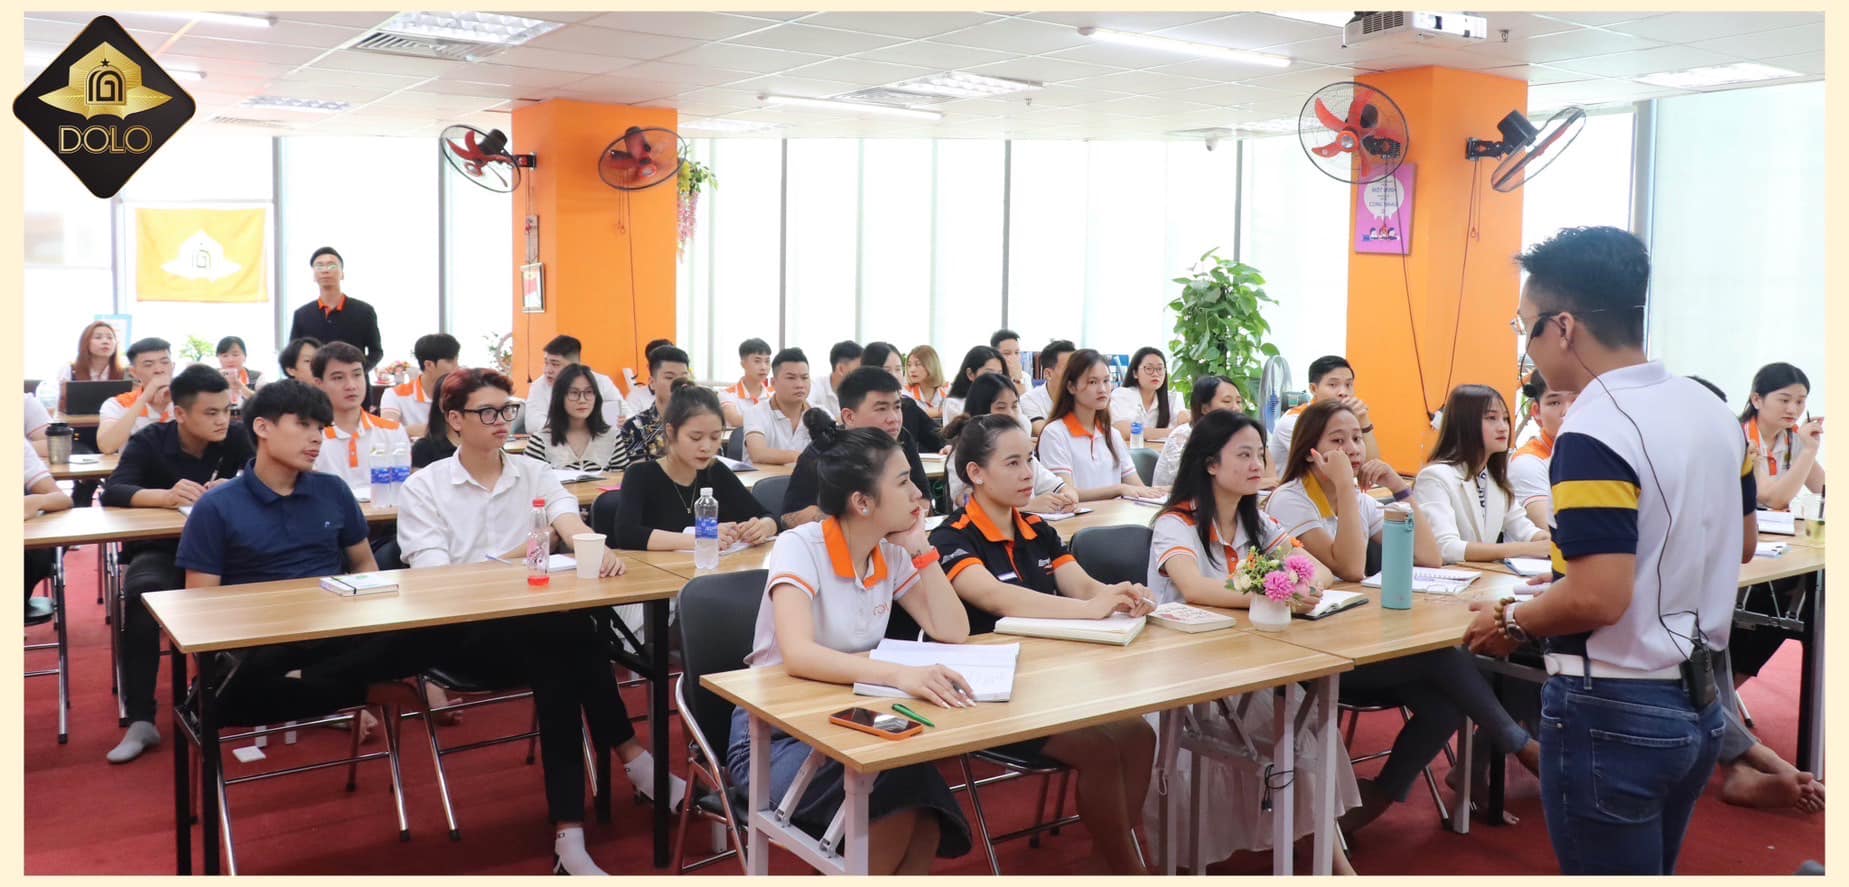 Chương trình “Đội ngũ đồng lòng, tối ưu hiệu suất” là một trong những chương trình với sự kết hợp của Vietnam Startup Coaching và Công ty Cổ Phần Thời Trang DOLO.